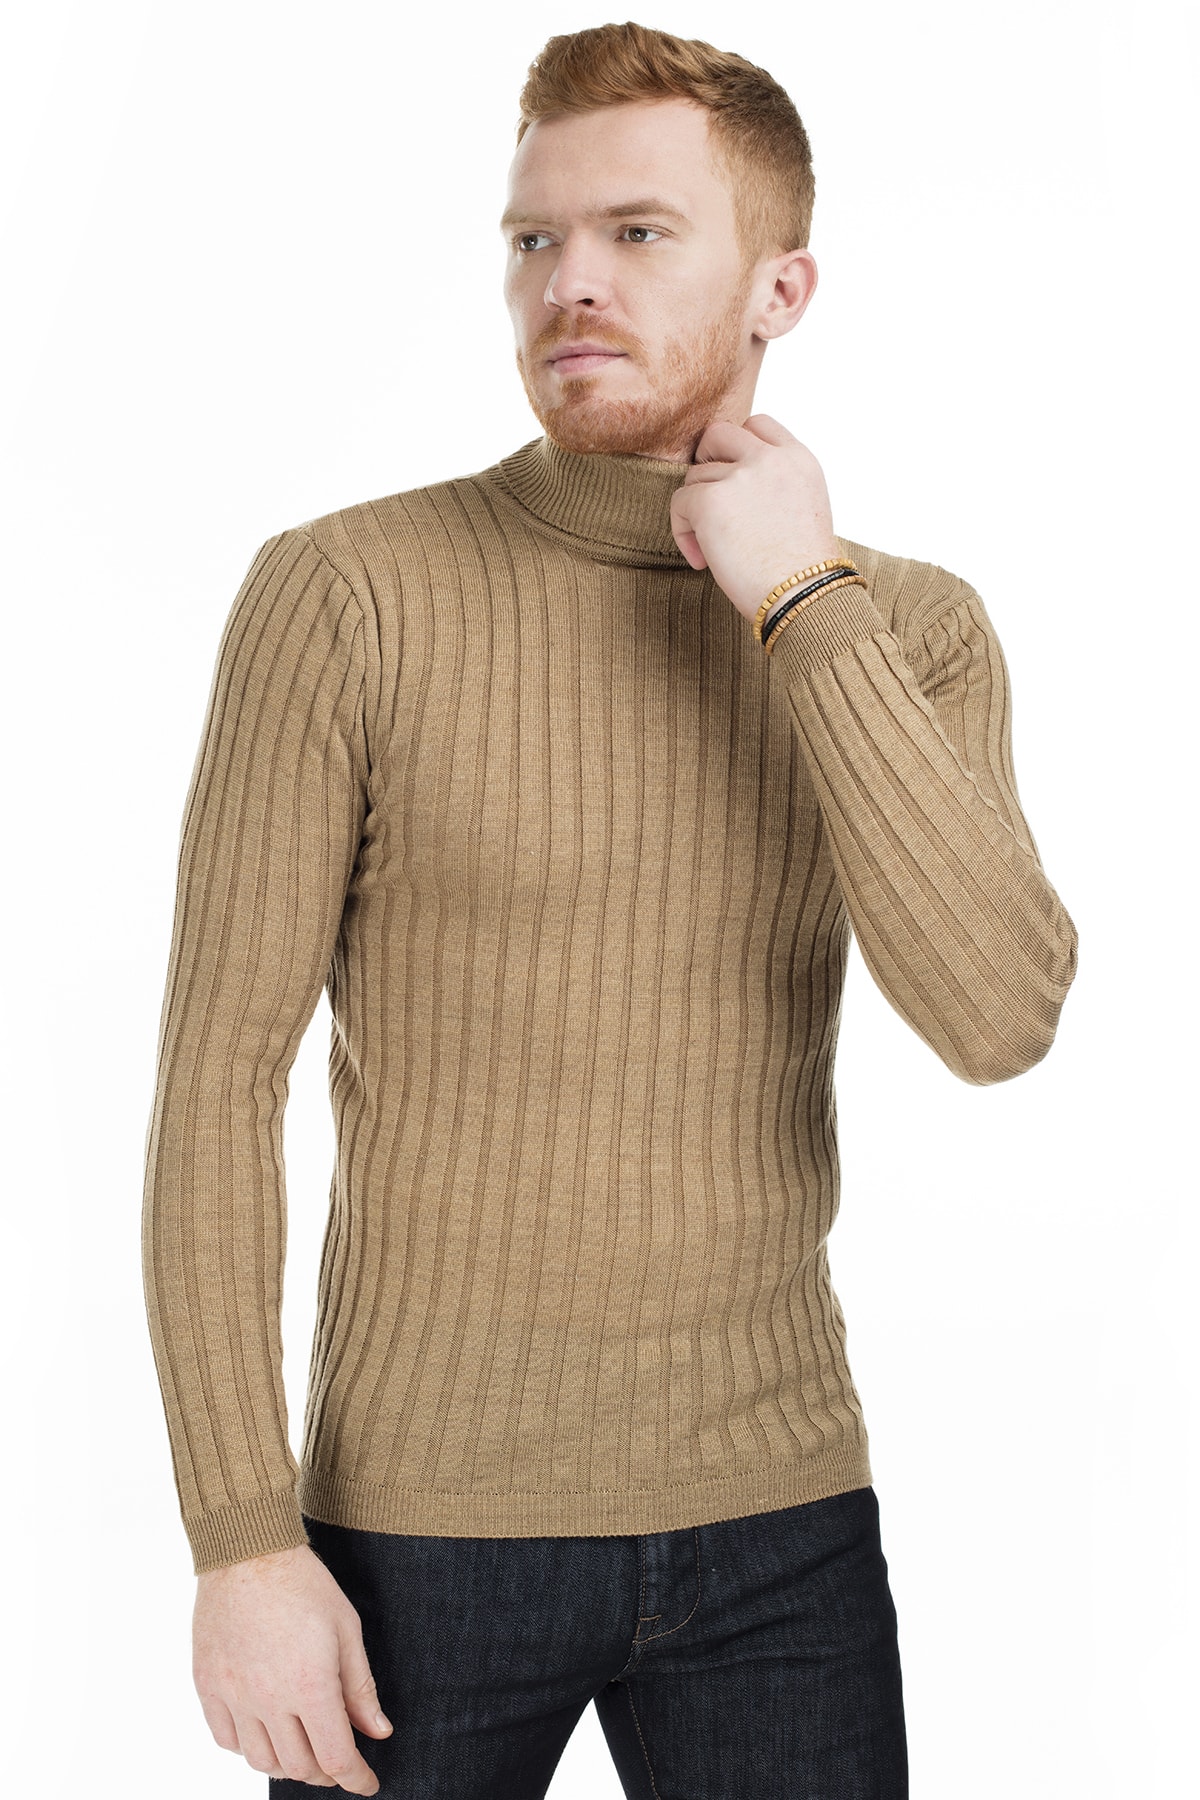 Men's Beige Slim Fit Turtleneck Knitwear Sweater